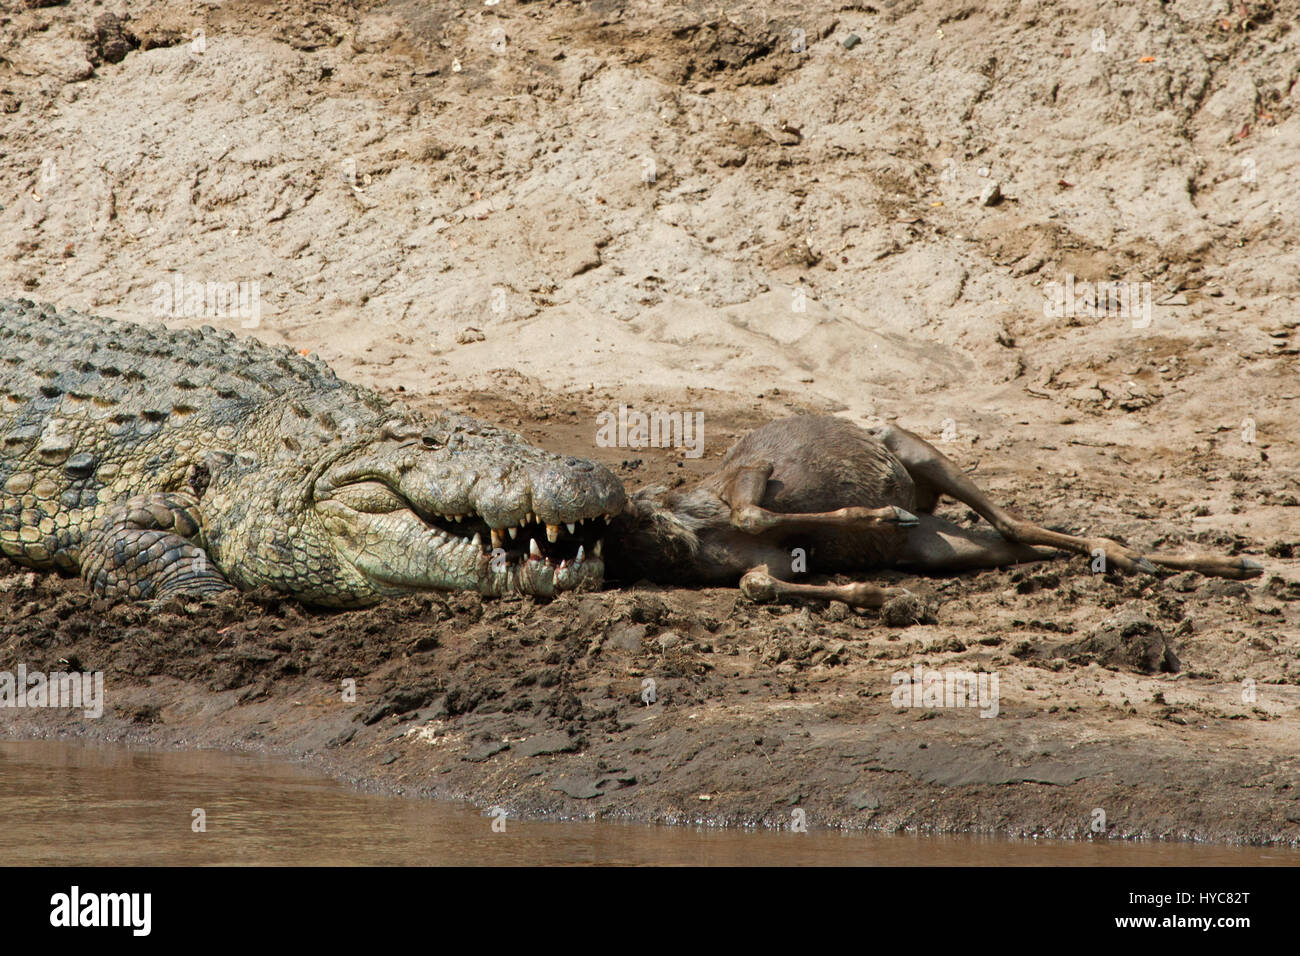 Manger crocodile gnu, parc national de Masai Mara, Kenya, Afrique Banque D'Images